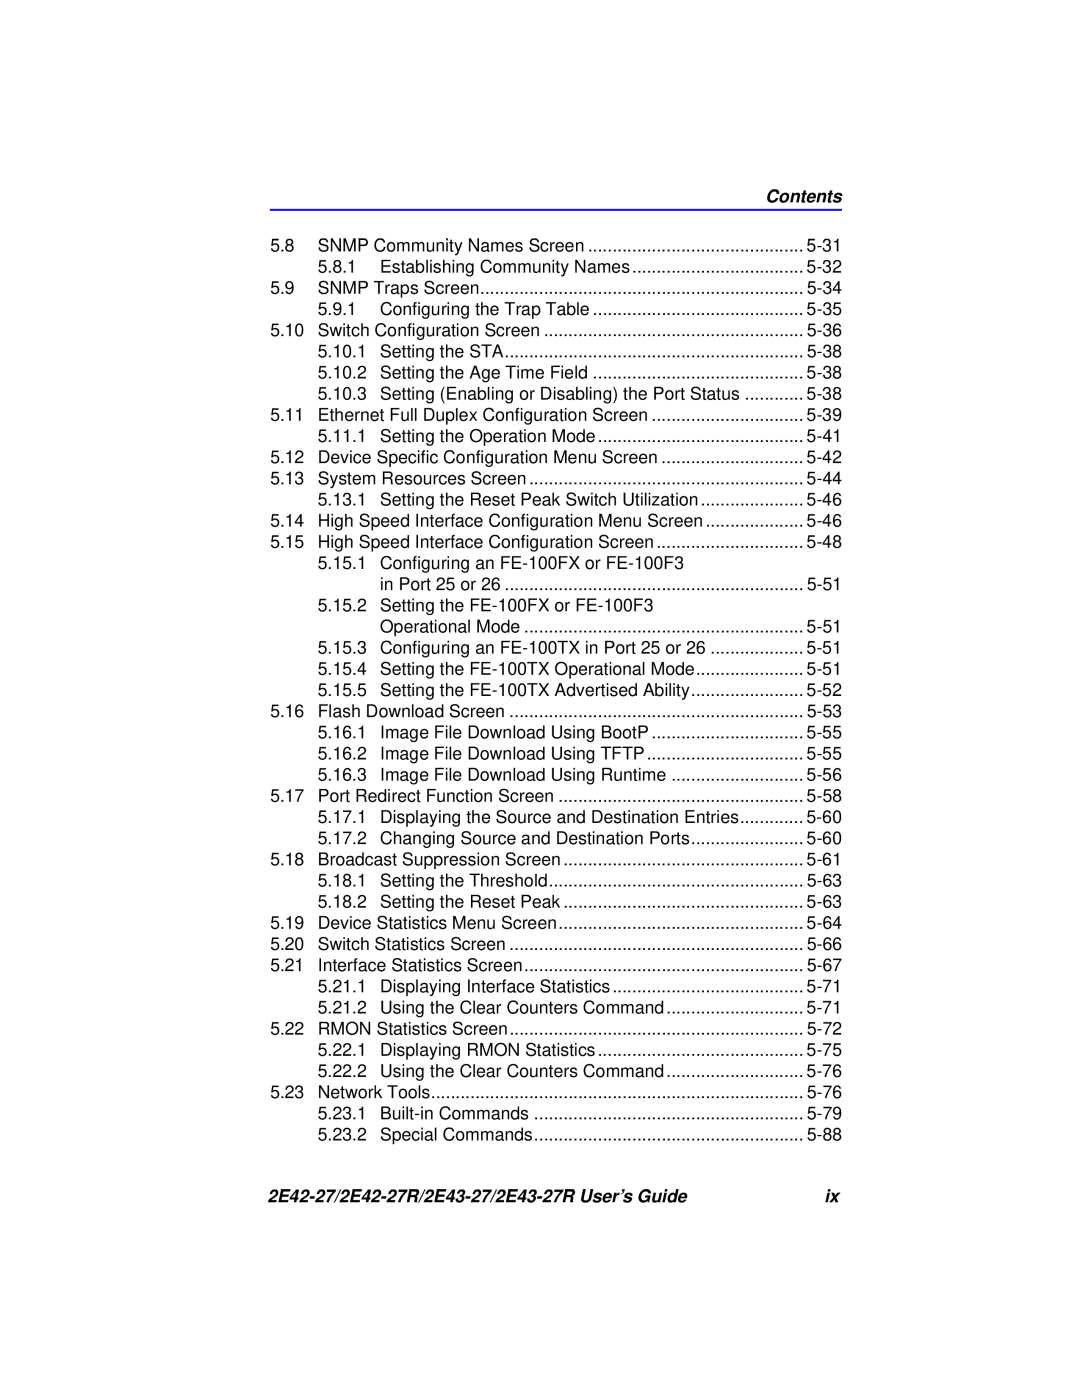 Cabletron Systems manual Contents, 2E42-27/2E42-27R/2E43-27/2E43-27R User’s Guide 